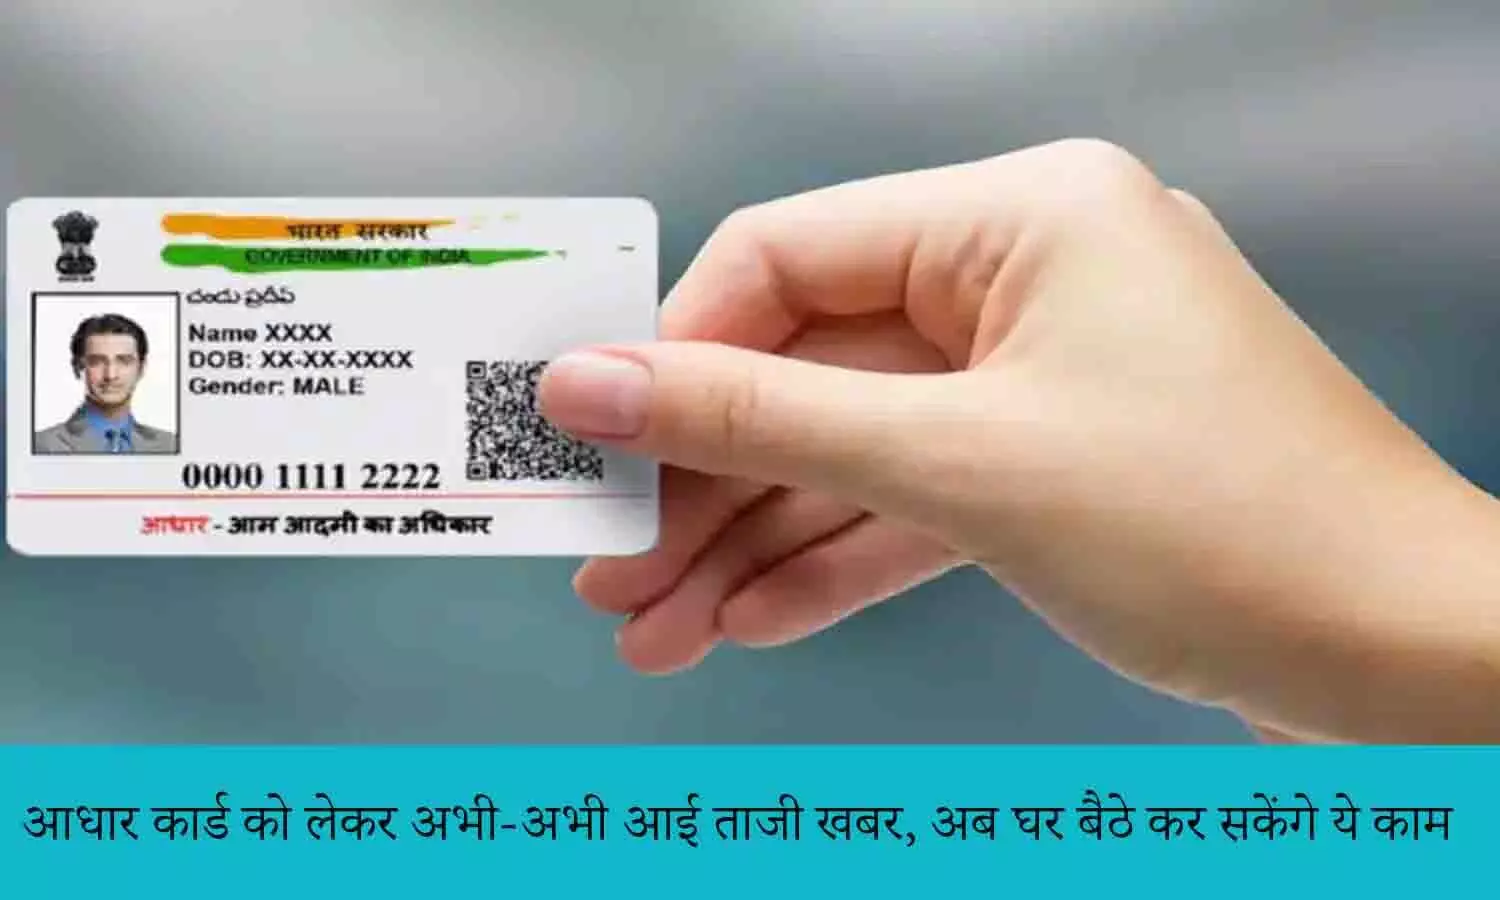 Aadhaar Card Update December 2022: आधार कार्ड को लेकर अभी-अभी आई ताजी खबर, अब घर बैठे कर सकेंगे ये काम, फटाफट जाने